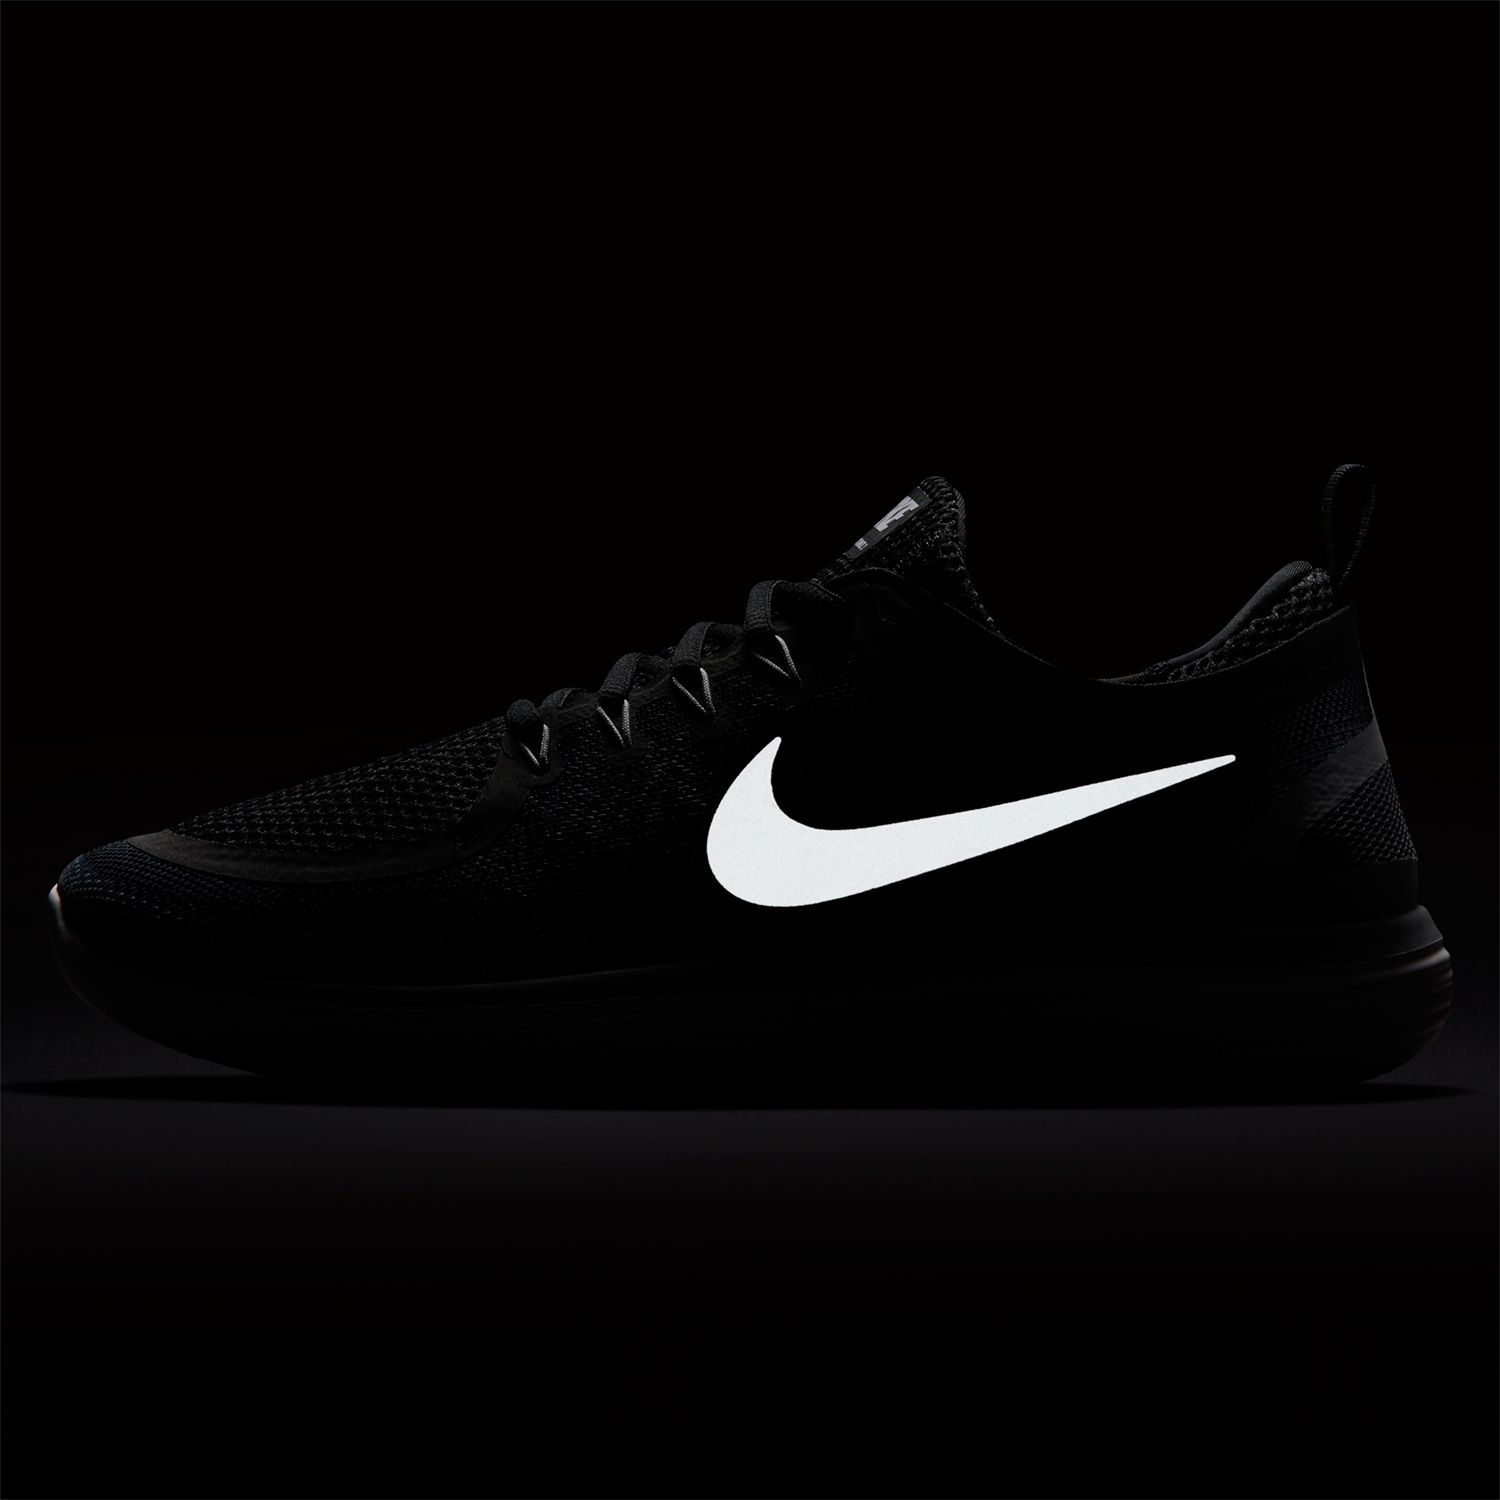 Nike Free RN Distance 2 Men's Running Shoe, Black/Cool Grey